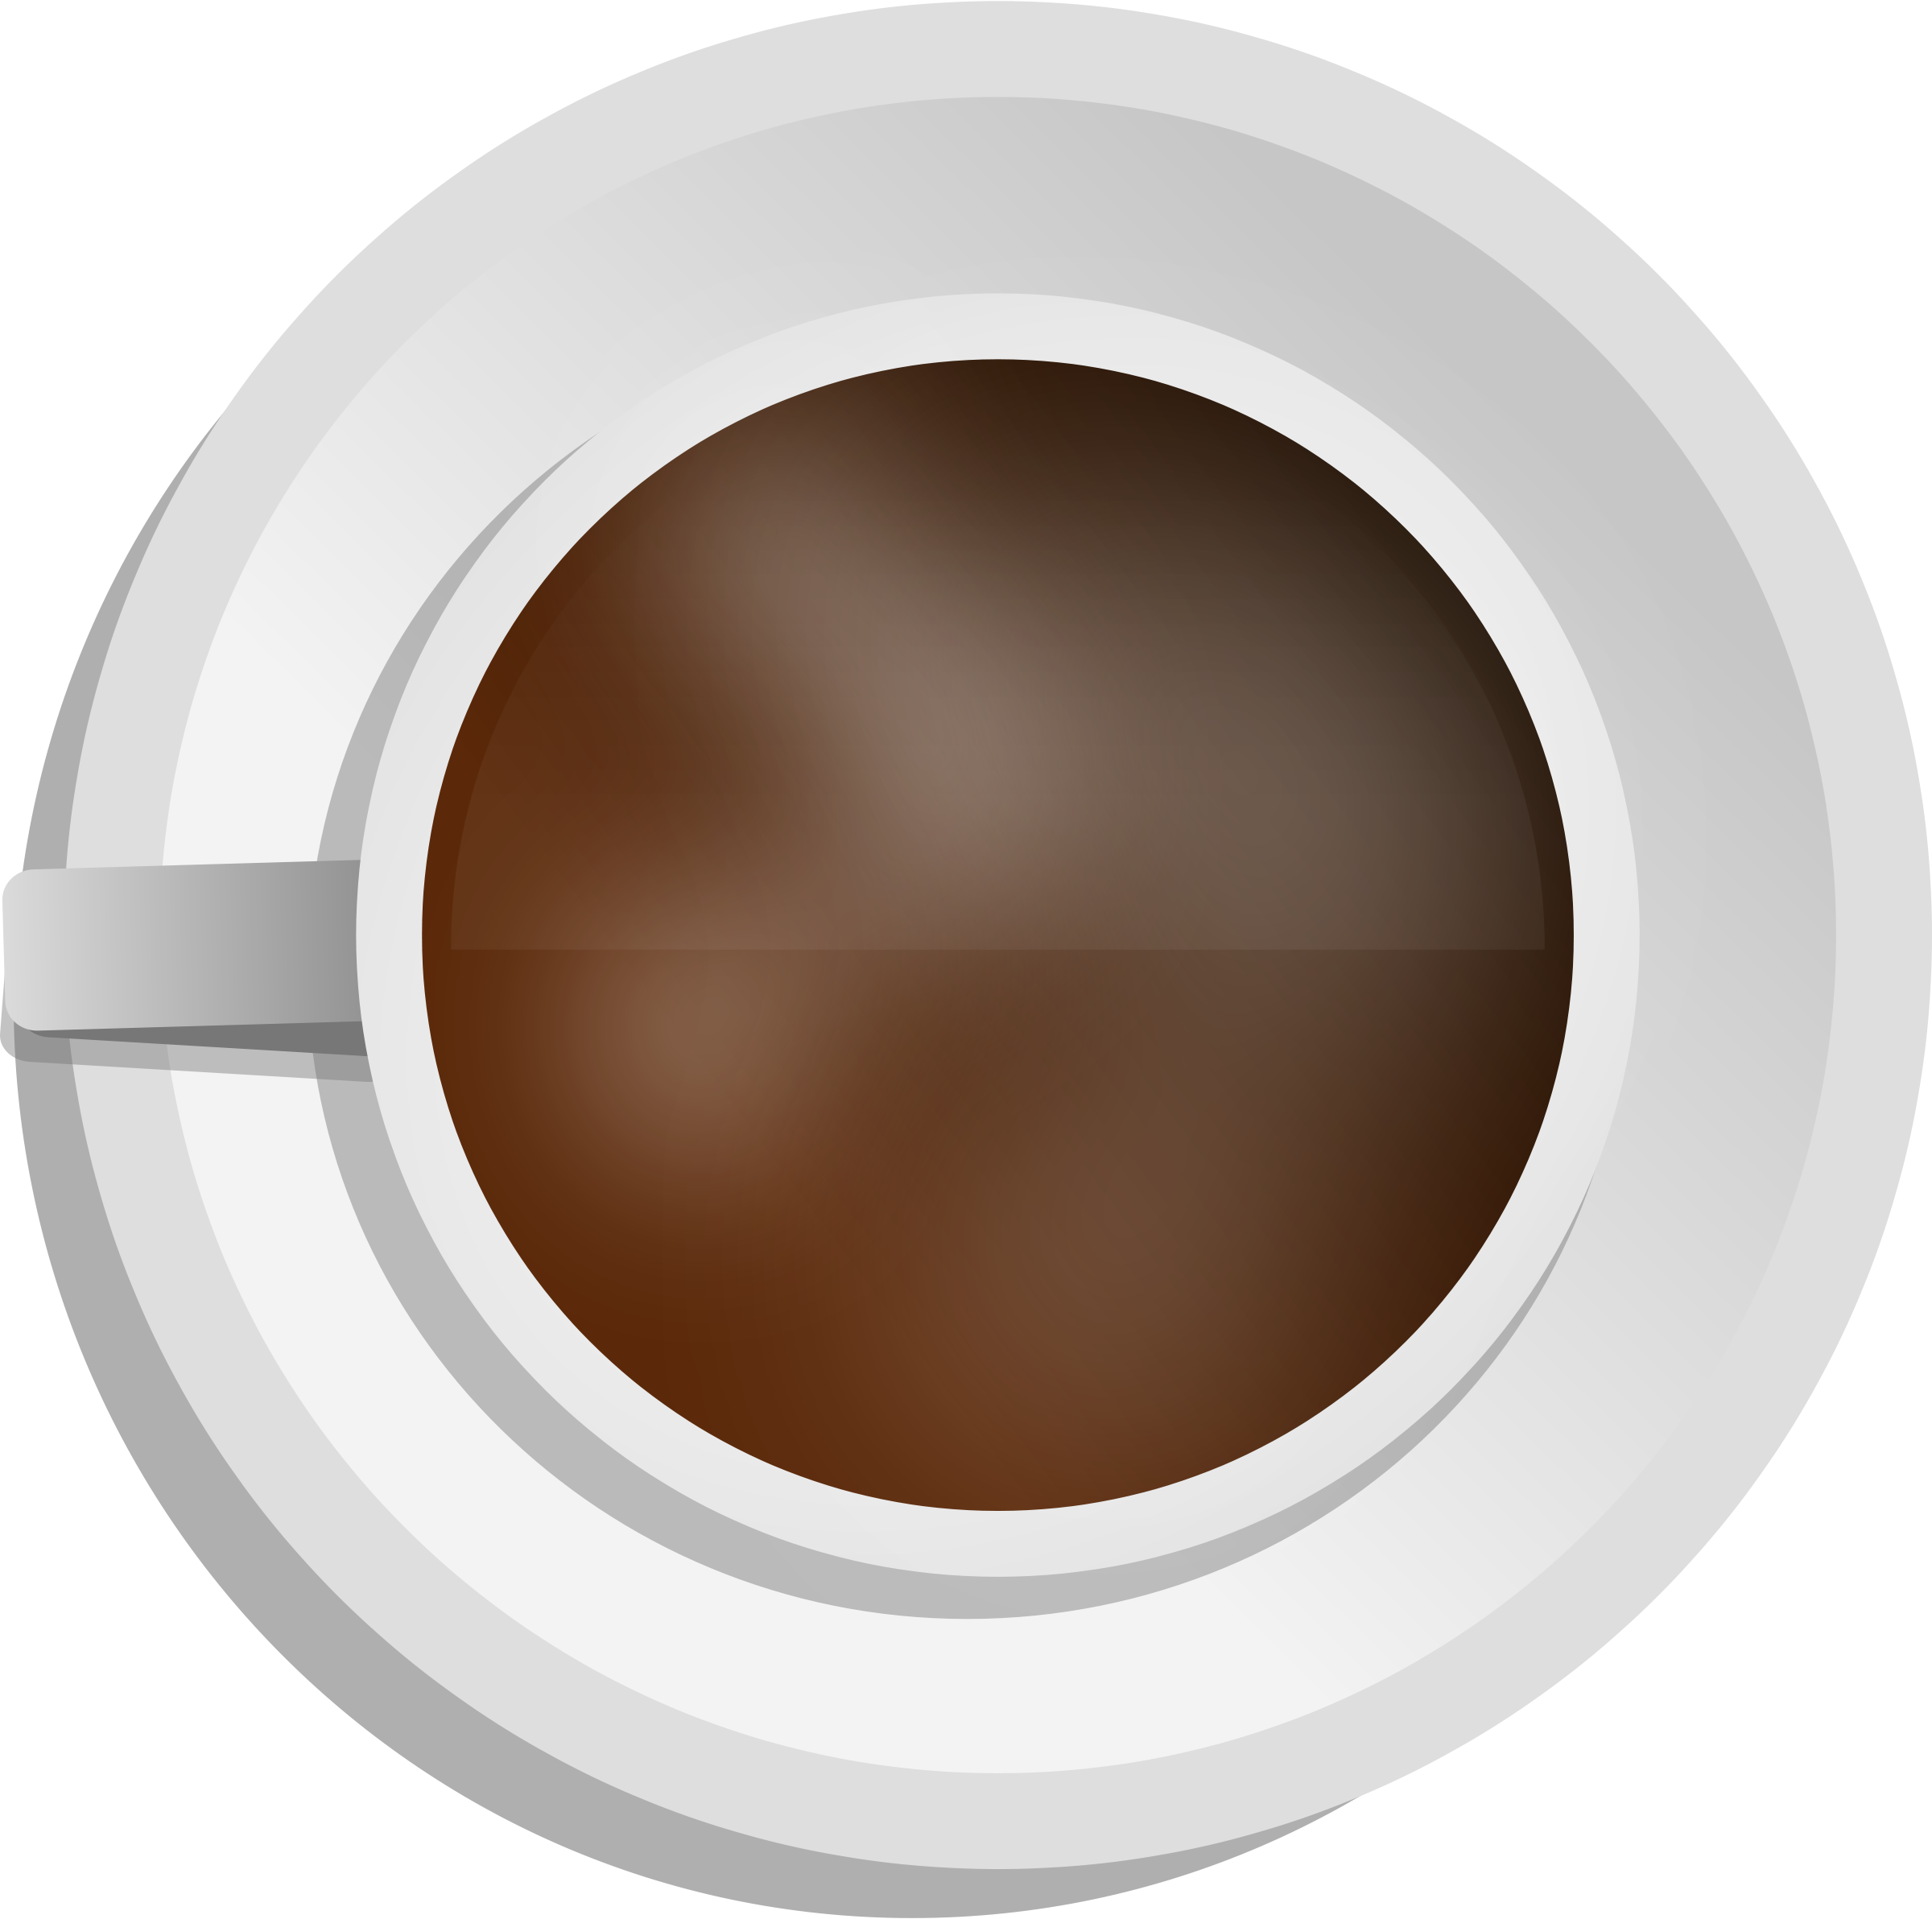 Una tazza di caffè